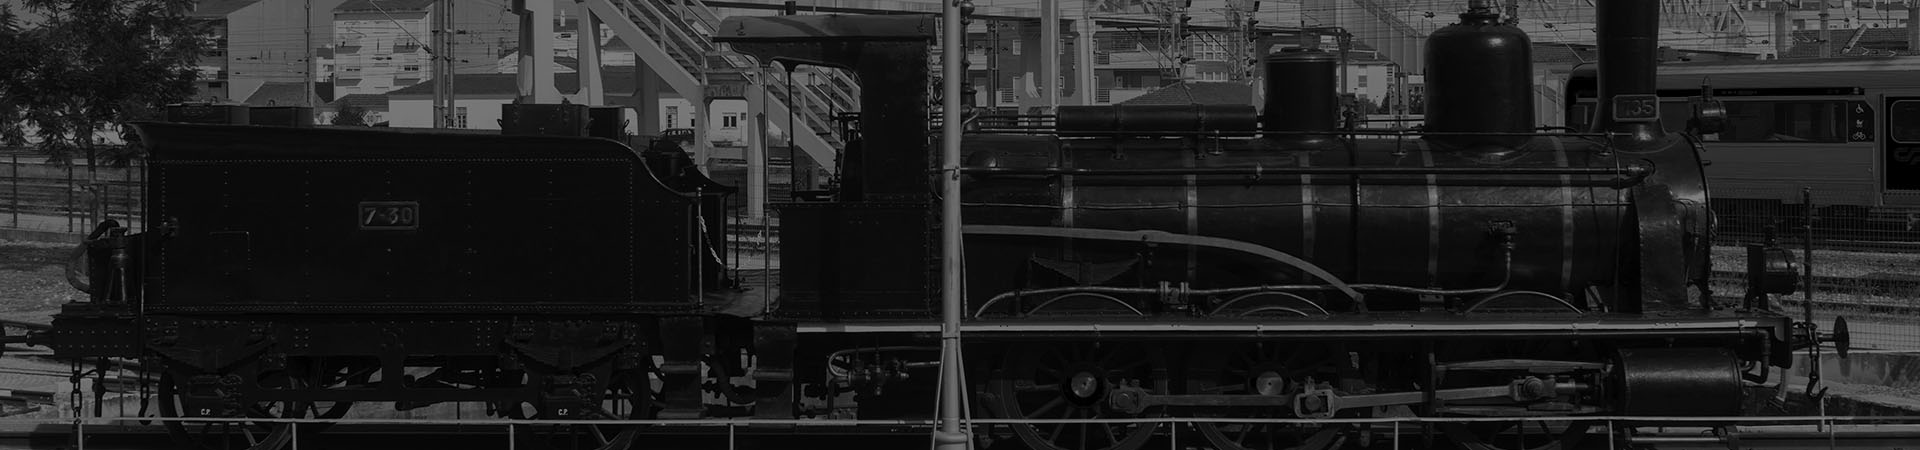 Fotografia da locomotiva a vapor com tender CP 855 na placa giratória